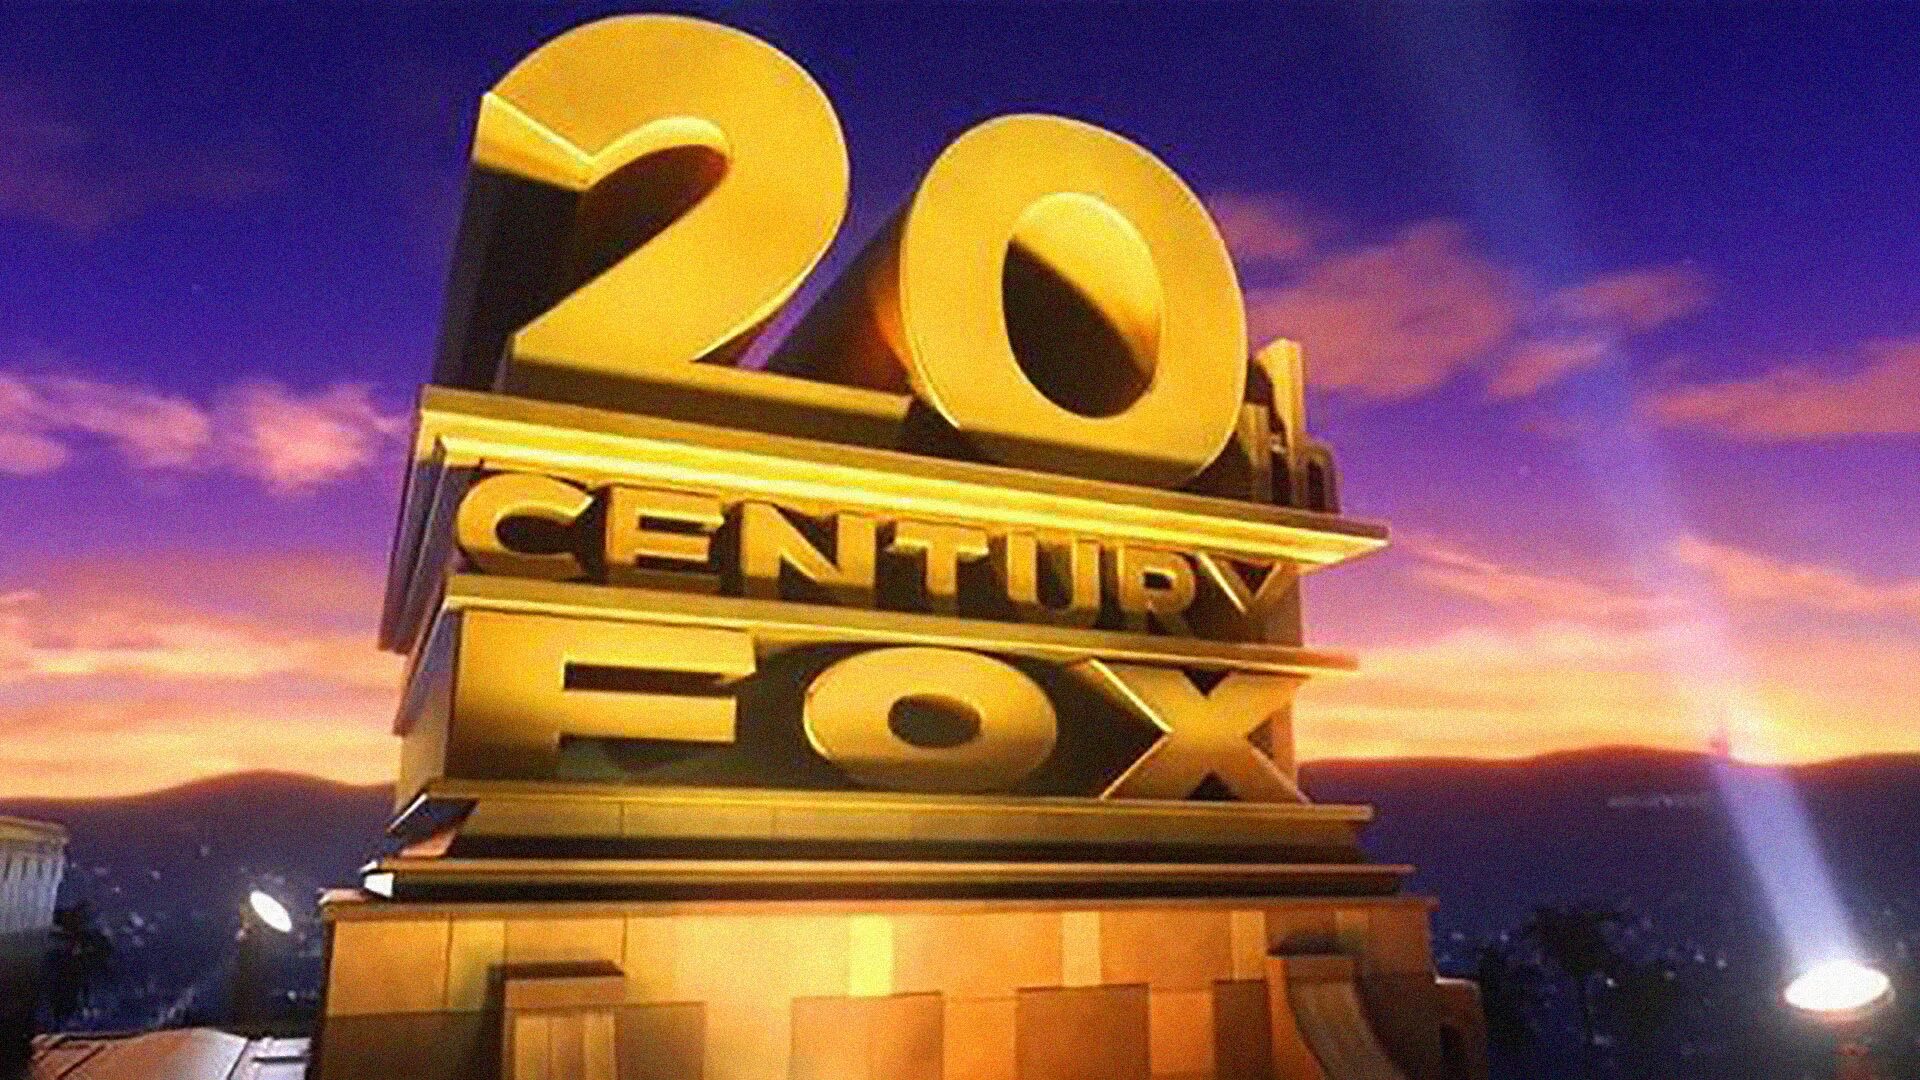 Двадцатый век Фокс студия. 20th Century Fox Rio. 20 Век Центури Фокс. 20 Век Фокс Пикчерз.